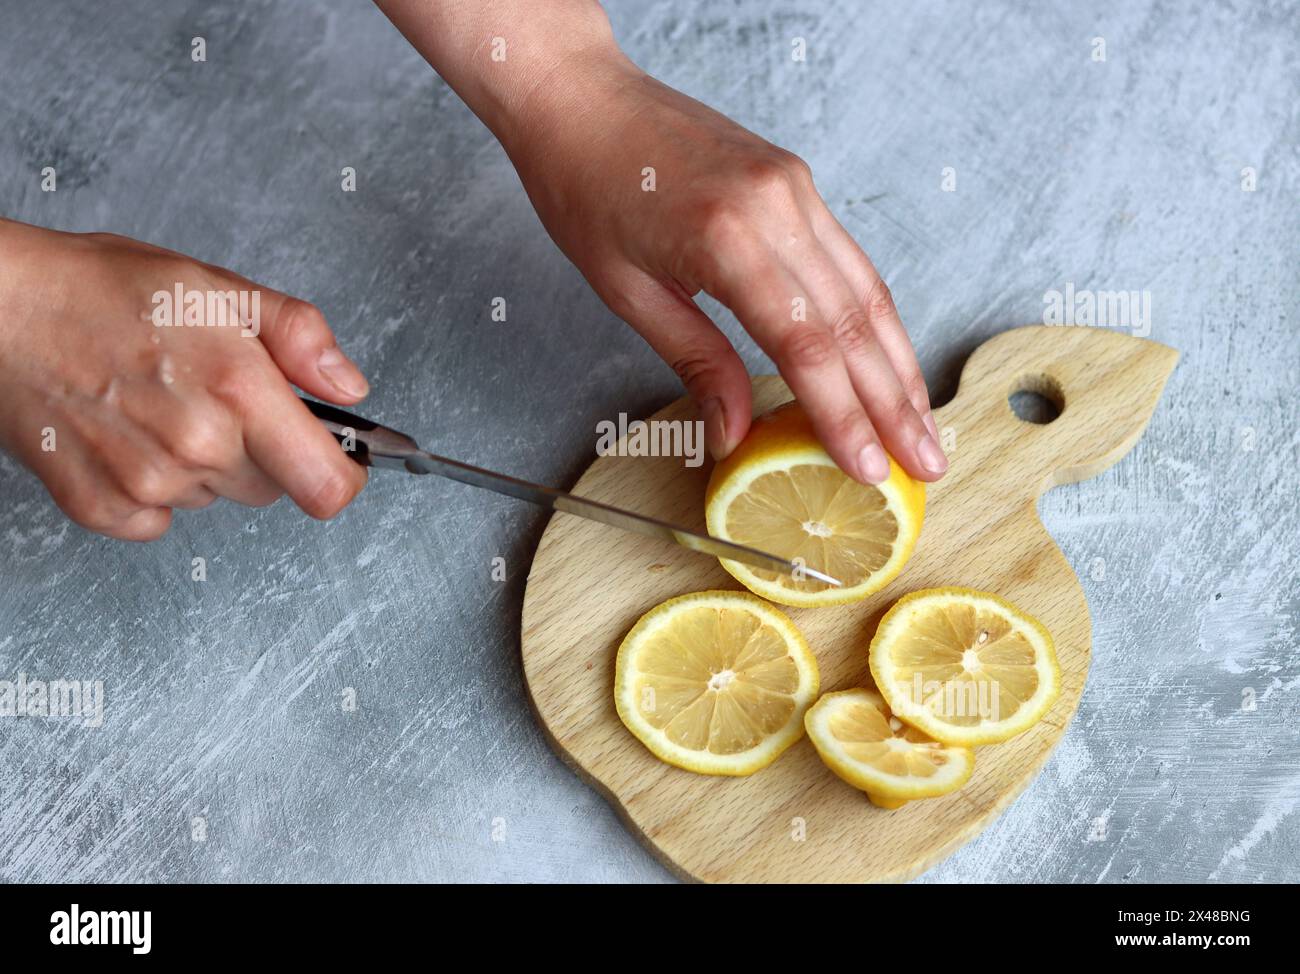 Les mains féminines coupent des citrons sur une planche de bois sur un fond gris avec un espace pour le texte Banque D'Images